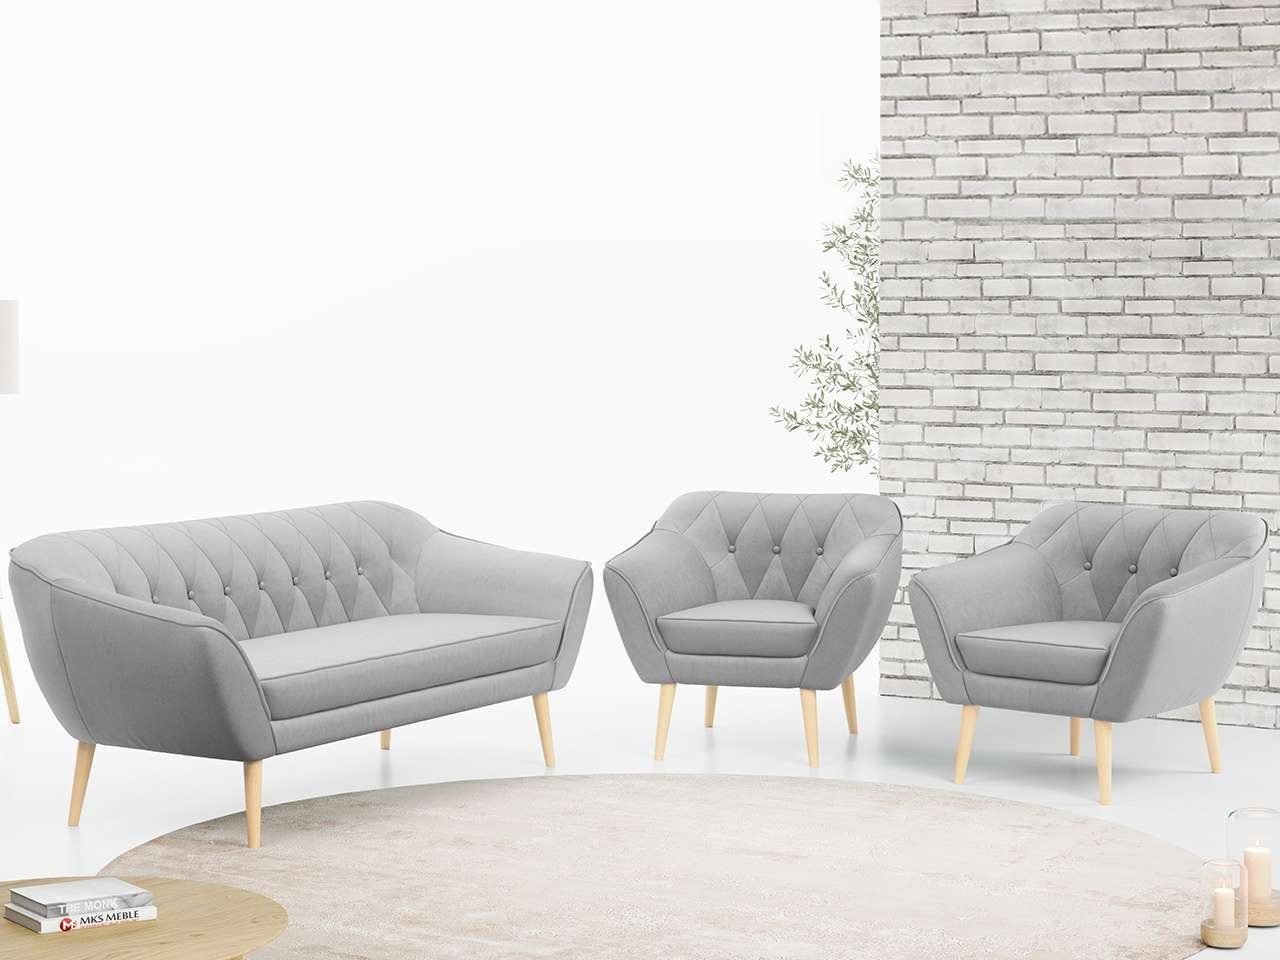 MKS MÖBEL Sofa PIRS 3 1 1, mit Relaxfunktion, Moderne Sofa Set, Skandinavische Deko Hellgrau Casablanca